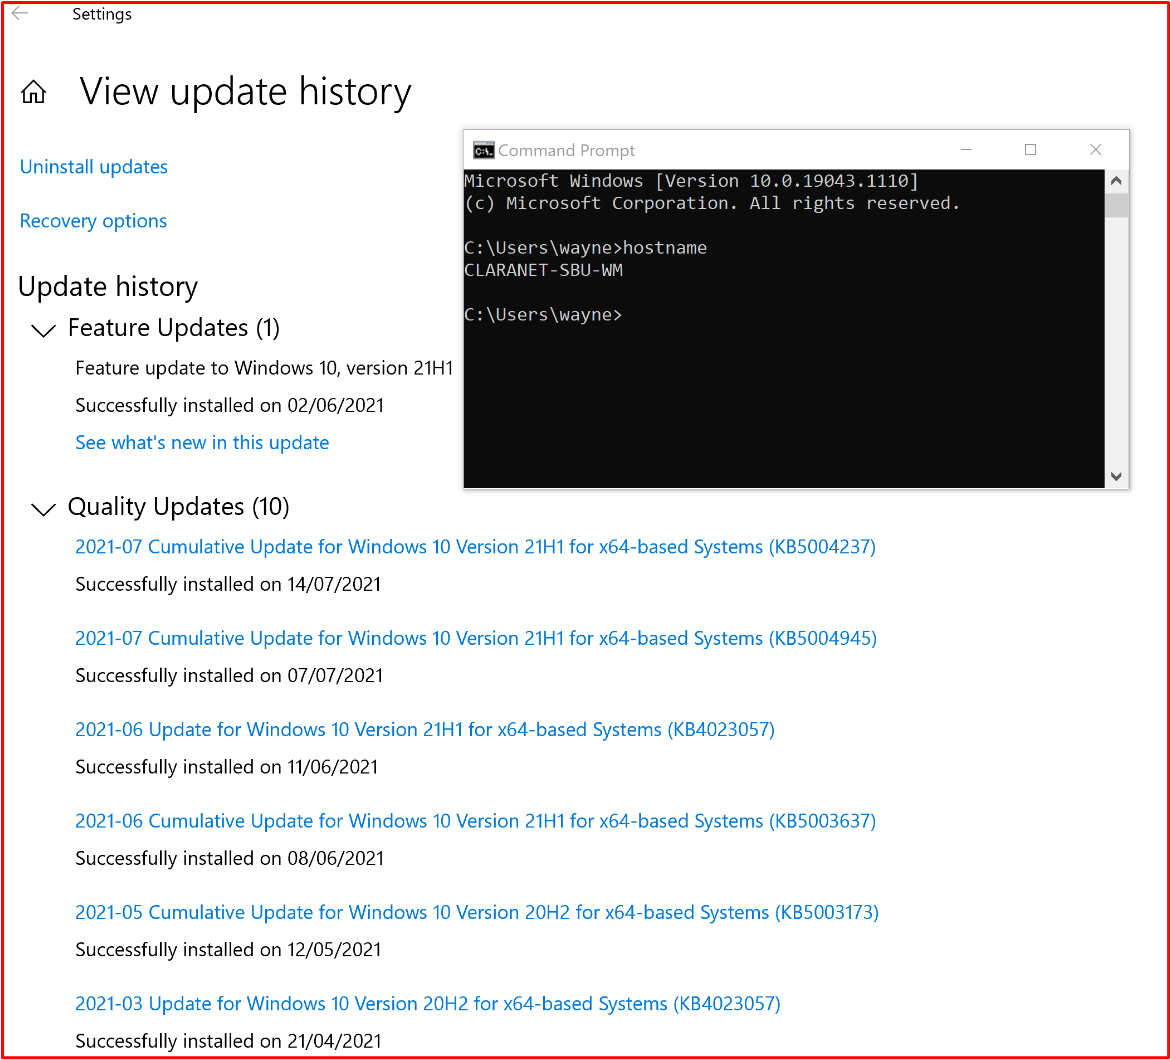 屏幕截图显示范围中的系统组件“CLARANET-SBU-WM”正在根据修补策略执行 Windows 更新。